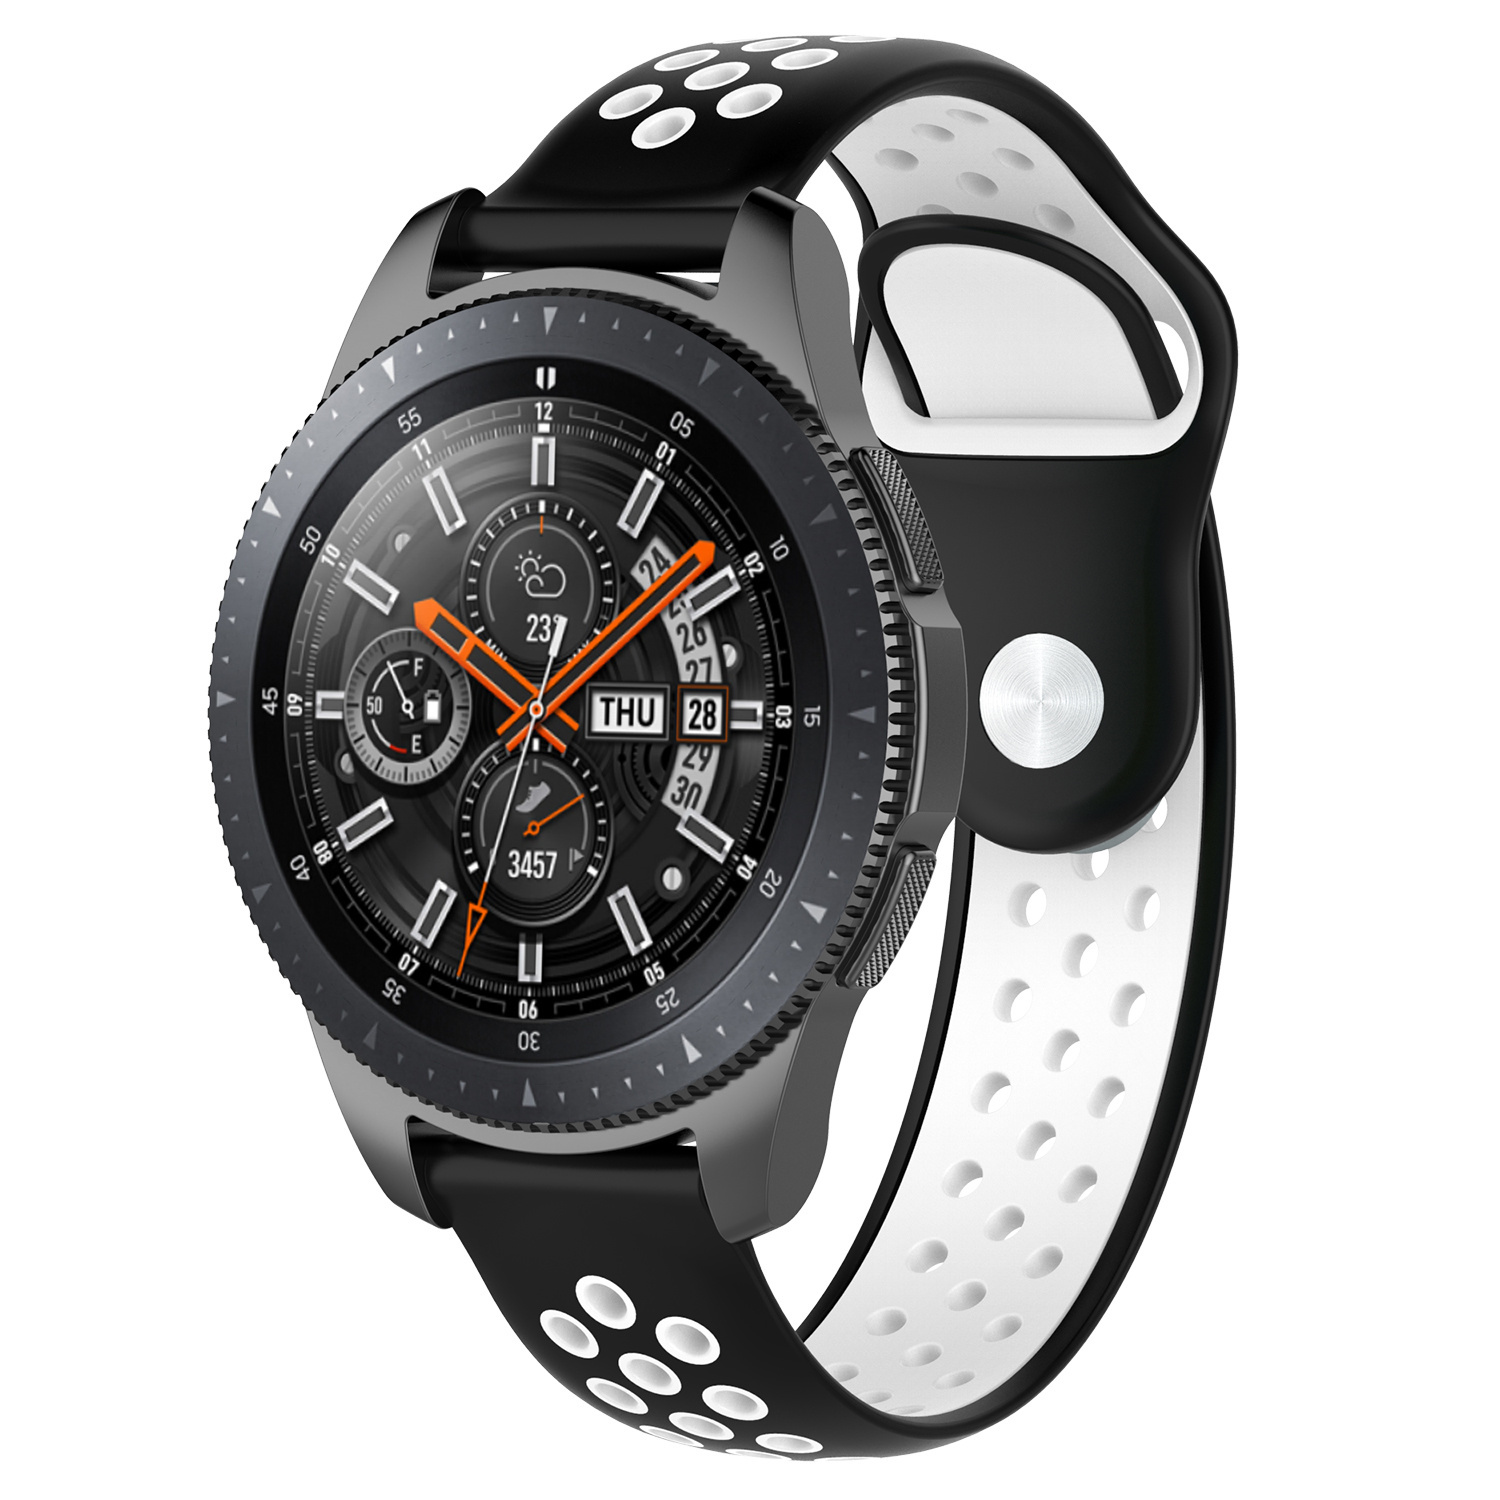 Correa deportiva doble para el Huawei Watch GT - negro blanco